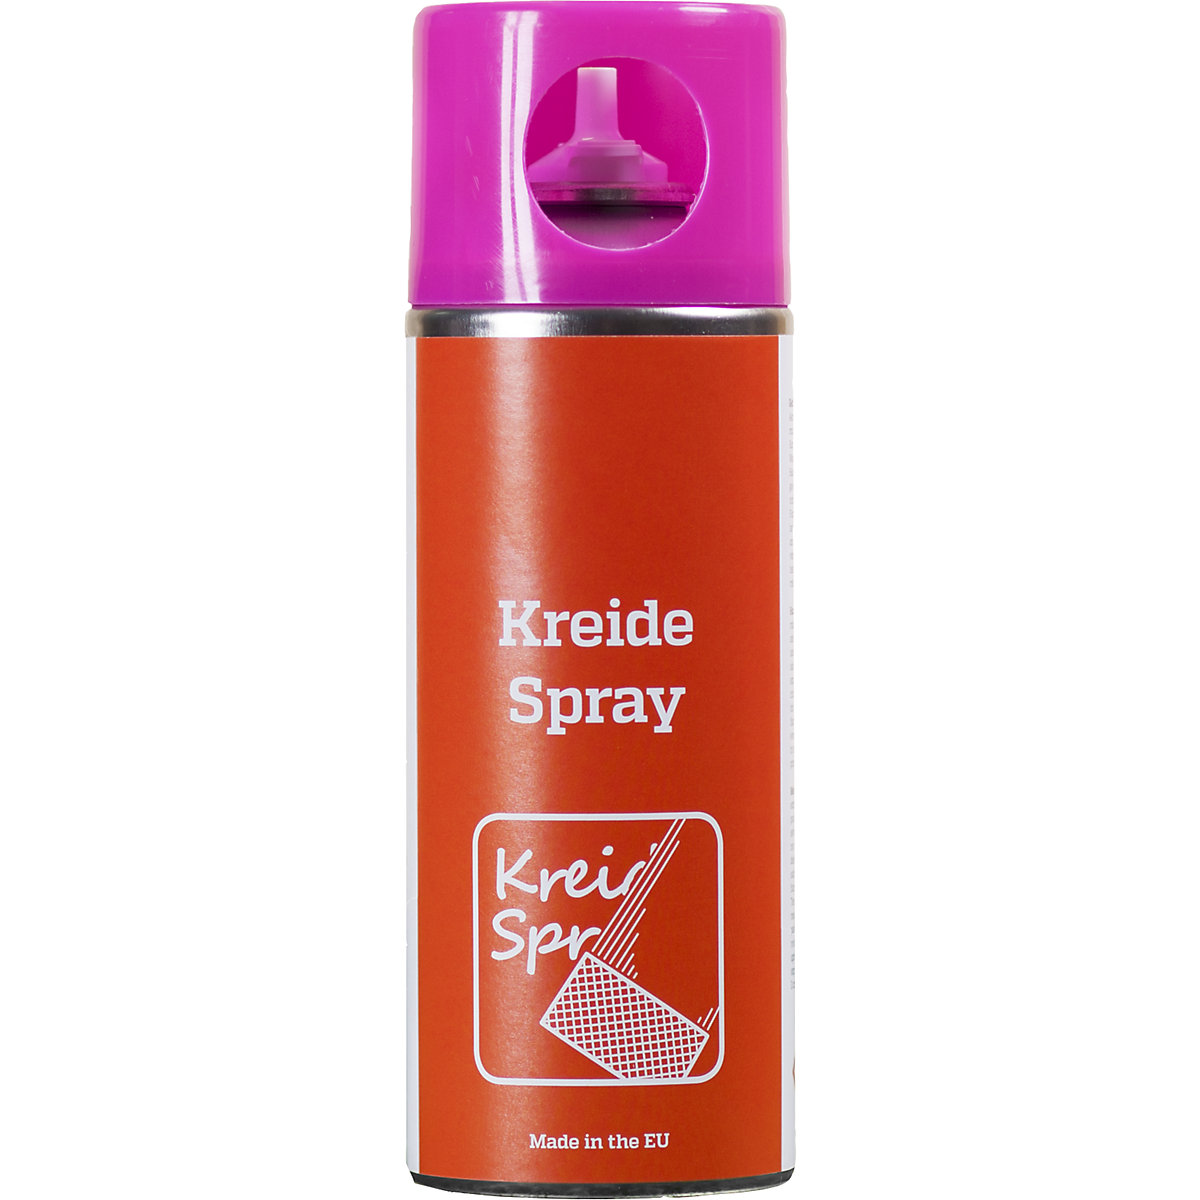 Kreidespray, Inhalt 400 ml, VE 6 Stk, pink